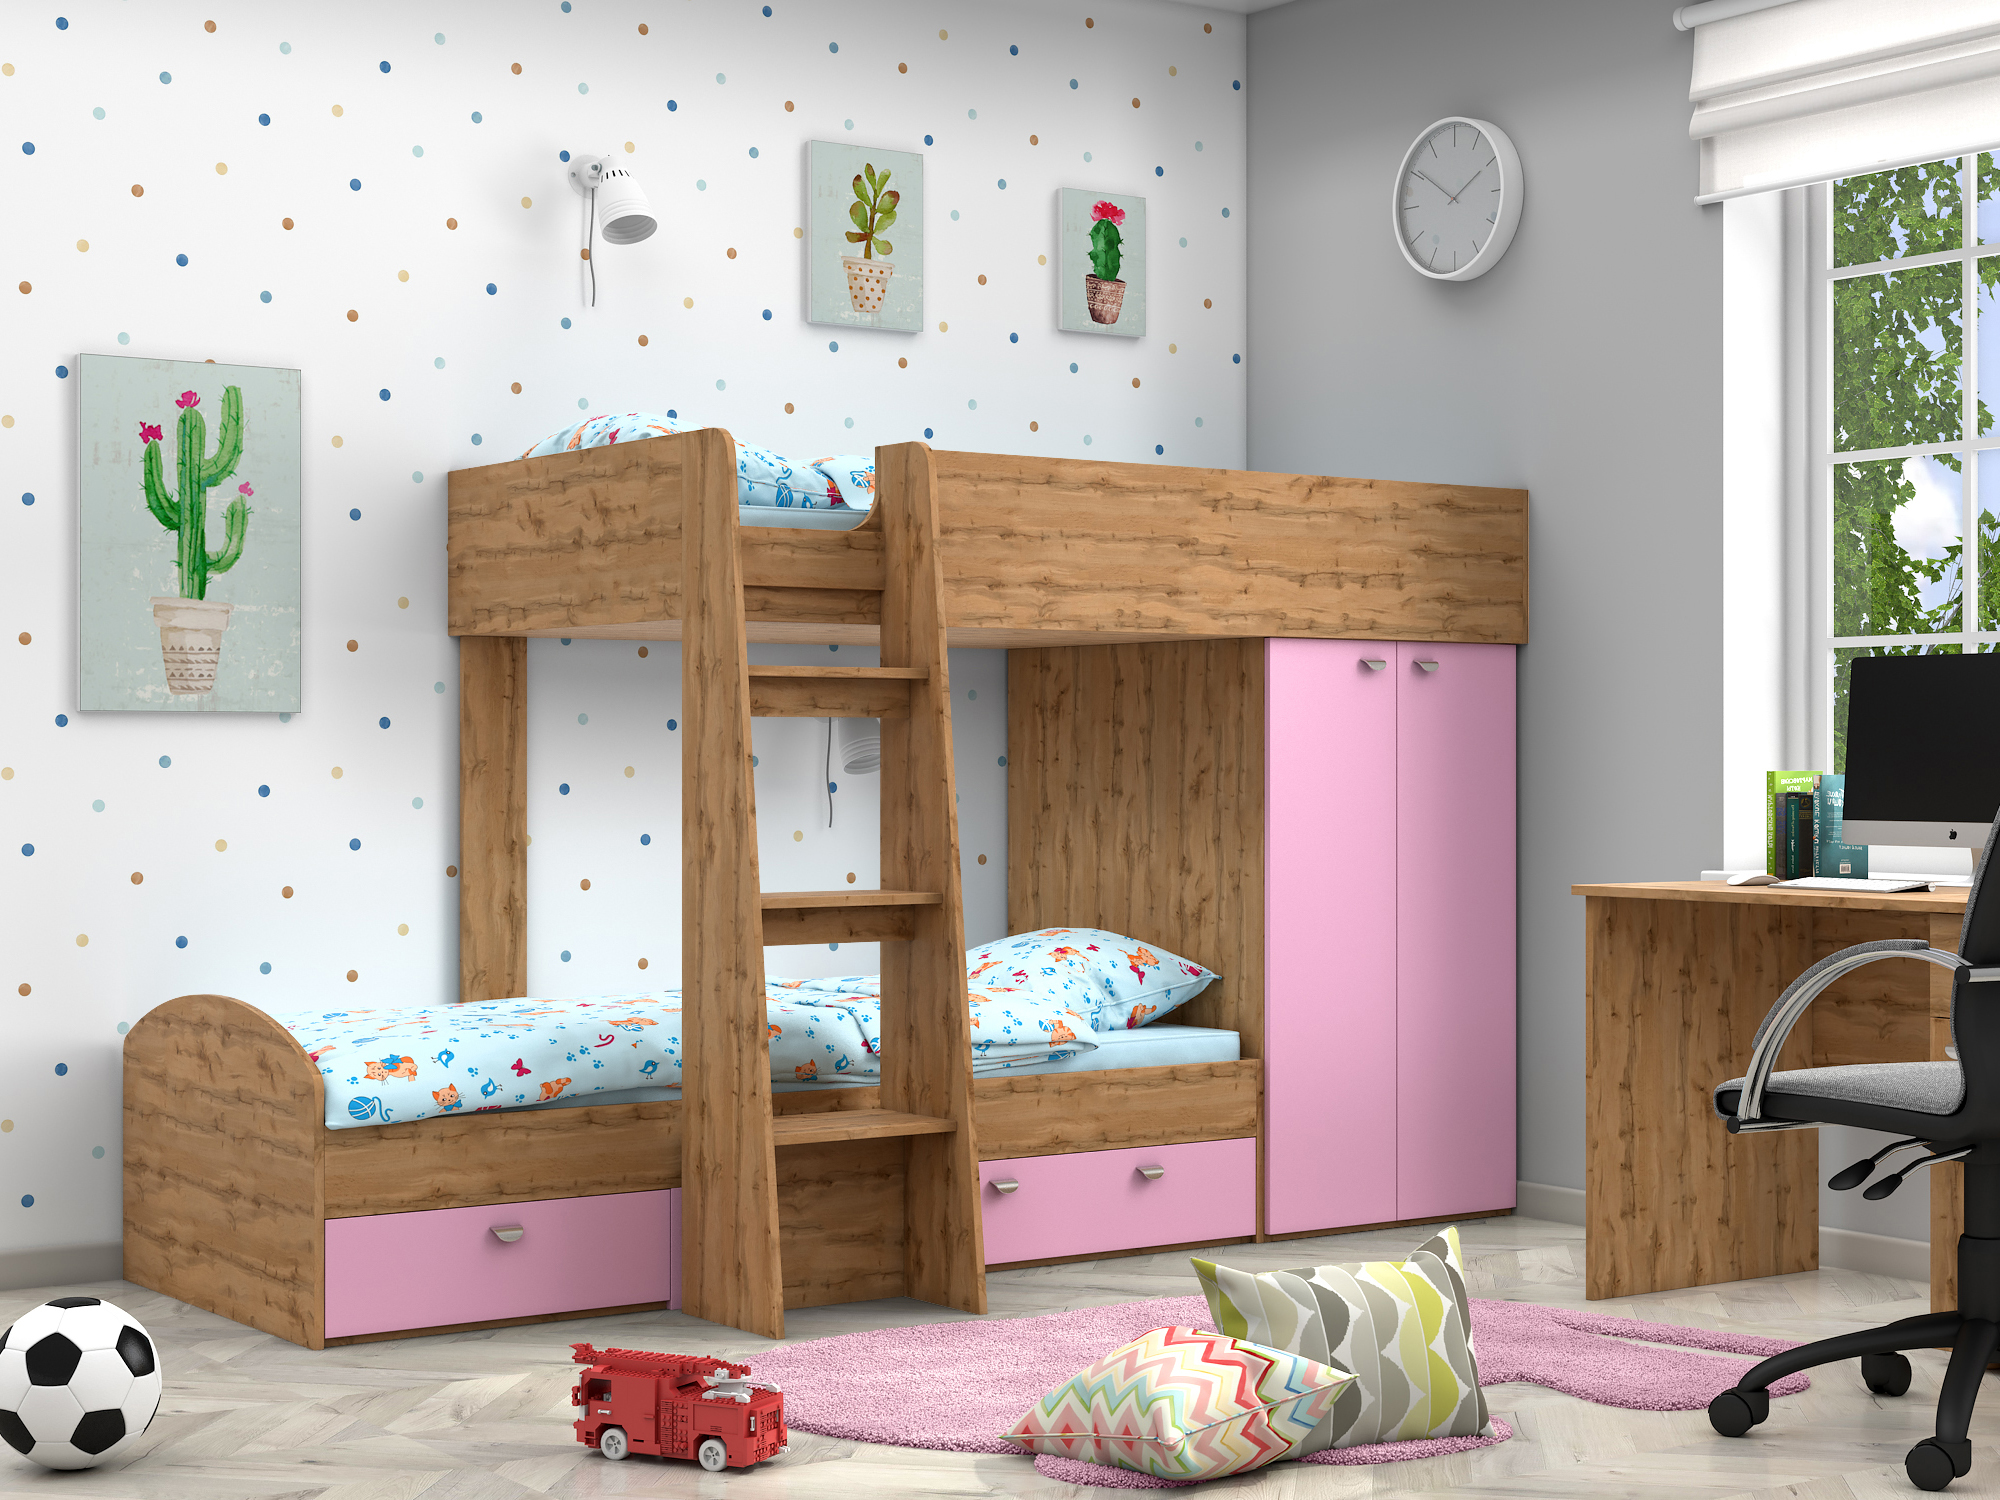 Двухъярусная кровать Golden Kids-2 (90х200) Розовый, Бежевый, ЛДСП двухъярусная кровать golden kids 2 90х200 бежевый белый лдсп